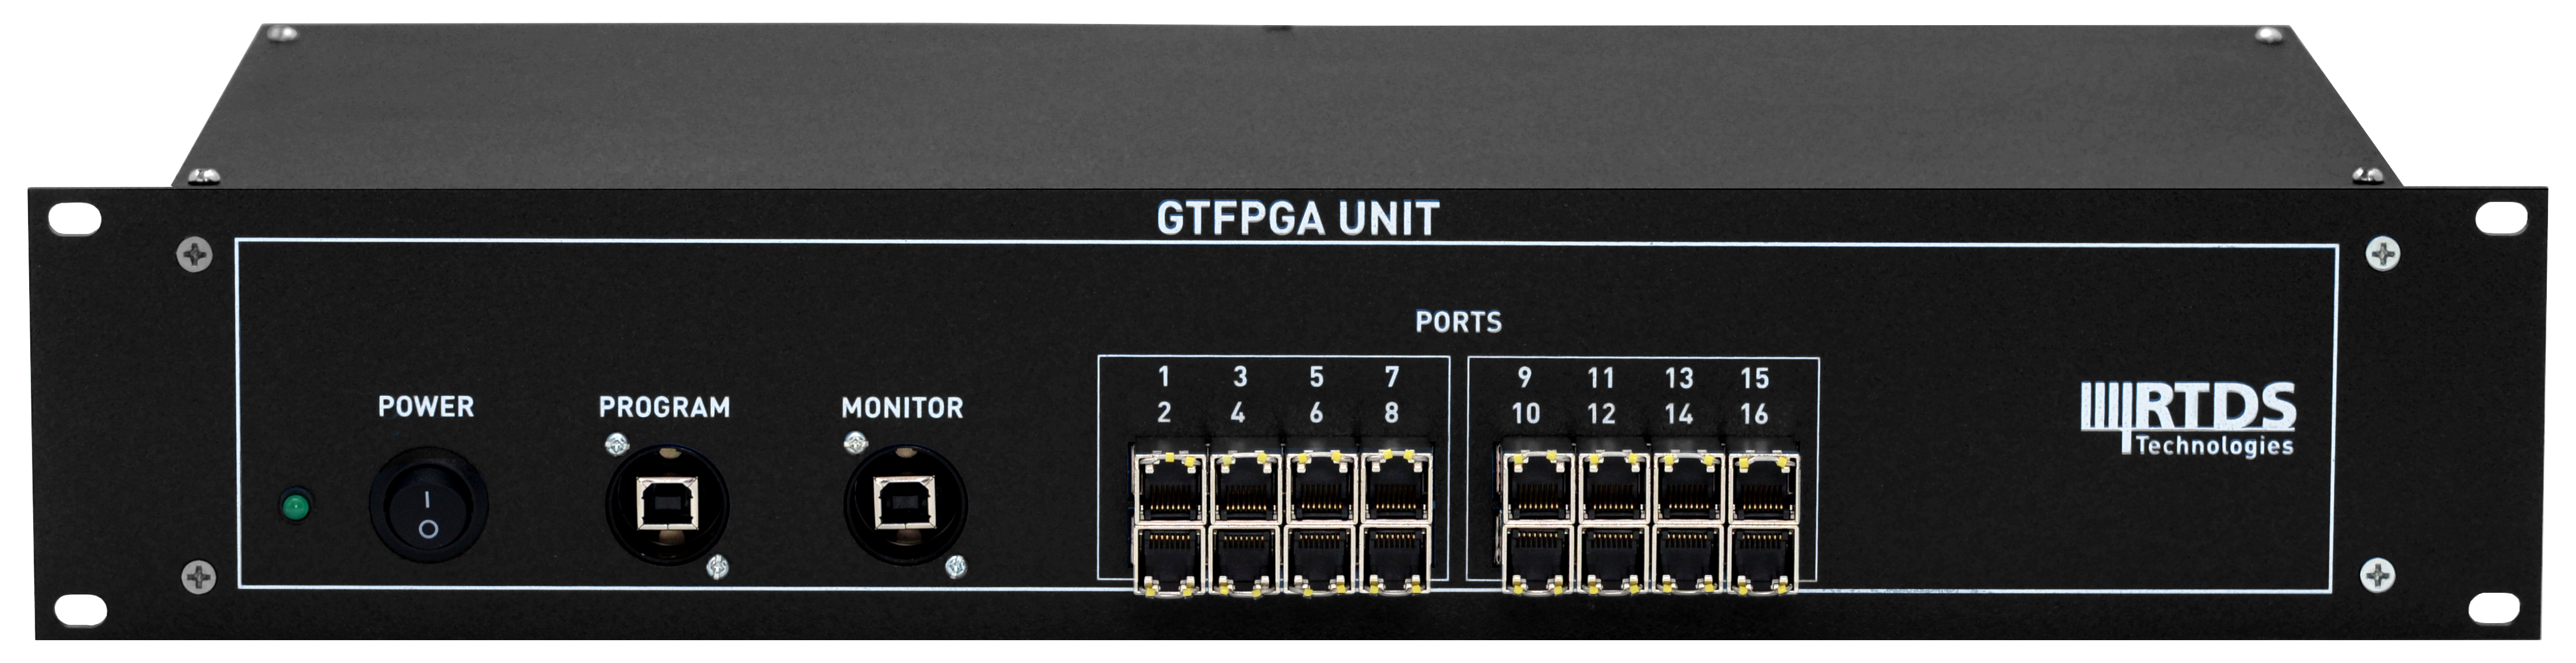 GTFPGA-Black-colour.png